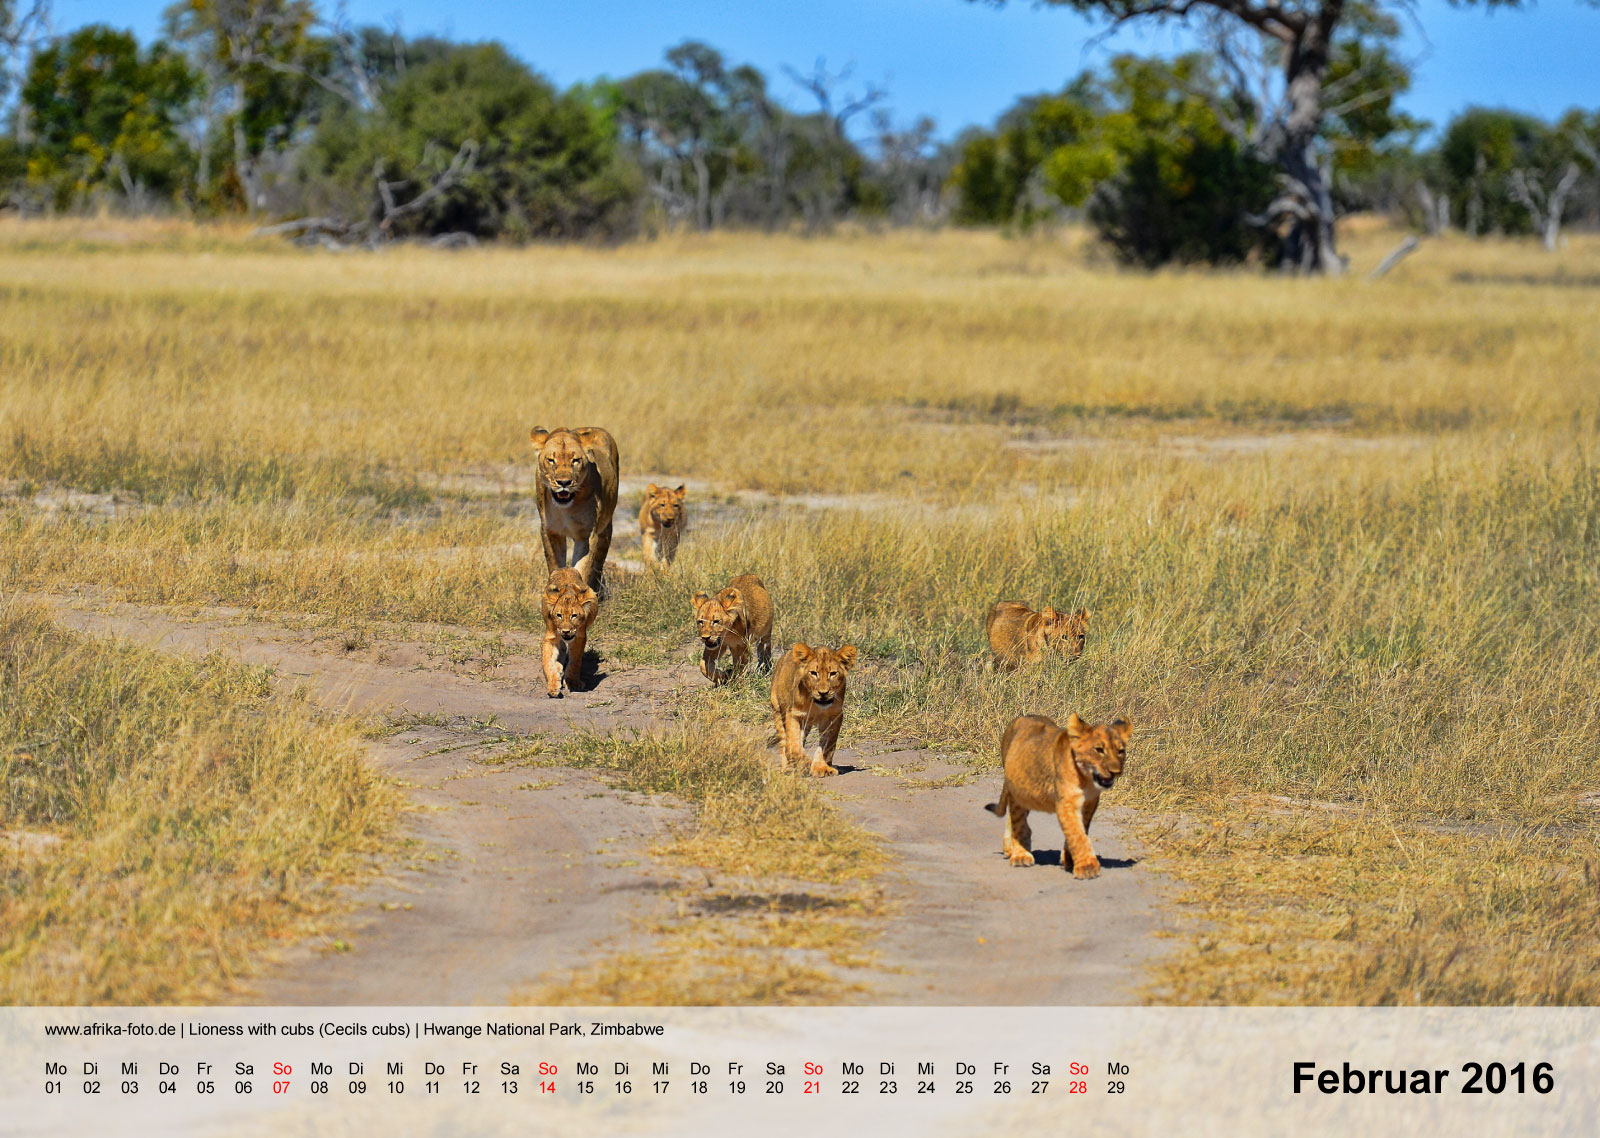 Lioness with cubs (Cecils cubs) | Hwange National Park, Zimbabwe | Kalender 2016 - Februar